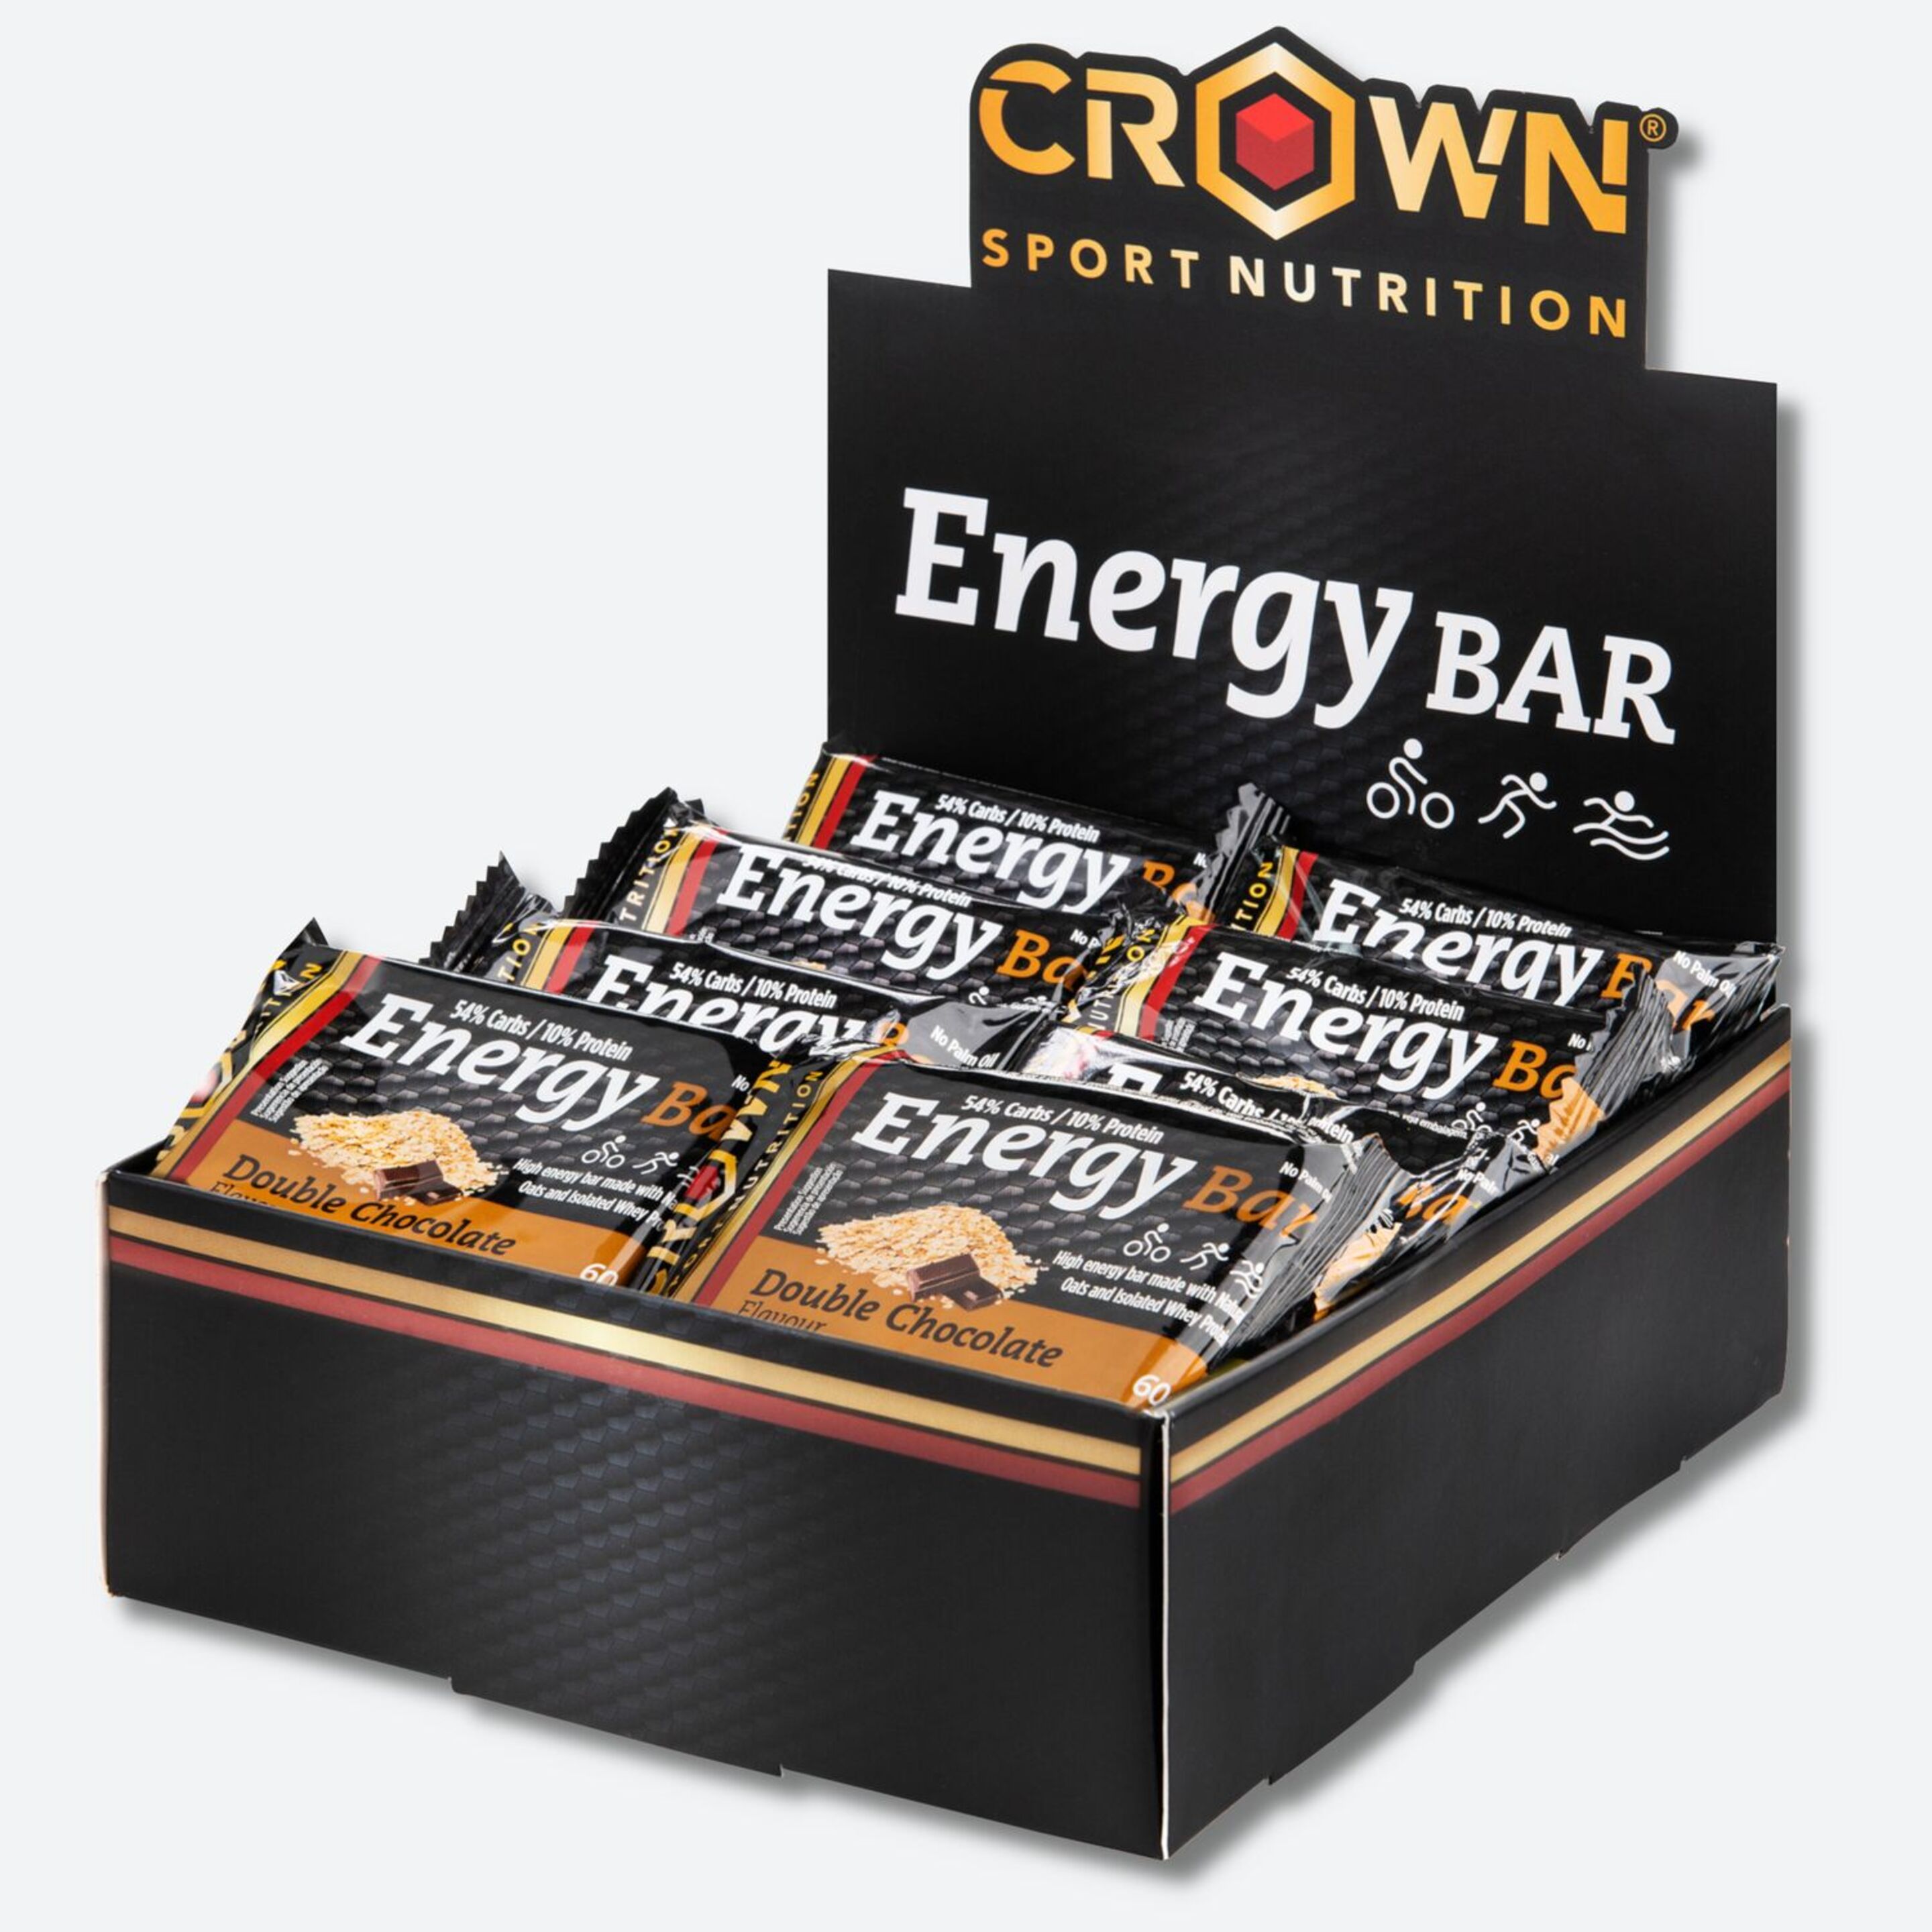 Energy Bar Crown Sport Nutrition Sabor Doble Chocolate, 12 X 60 G